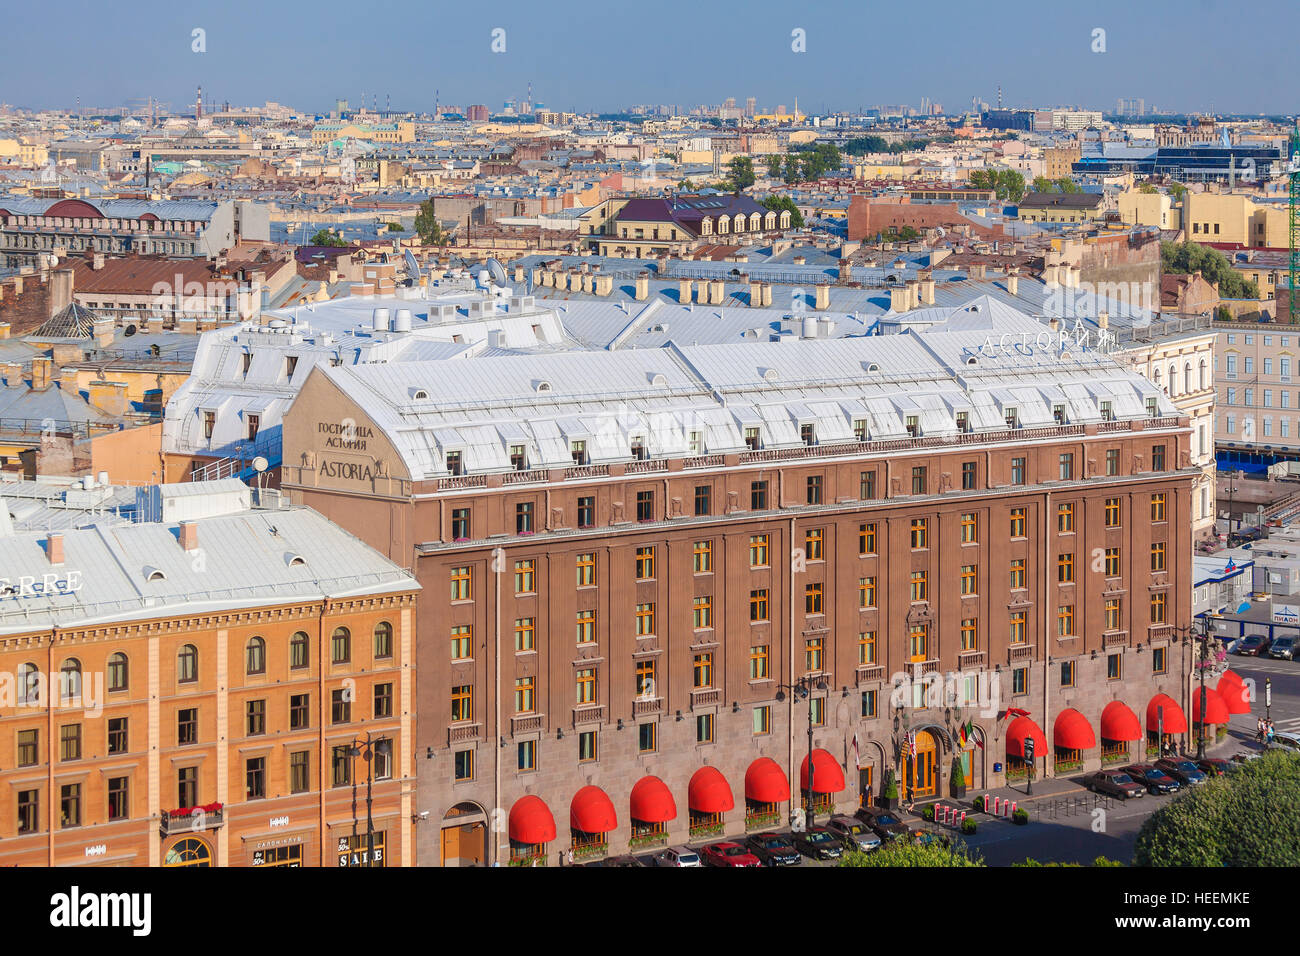 SAINT PETERSBURG, Russie - le 26 juillet 2014 : La vue depuis le pont d'observation de la cathédrale Saint-Isaac à la célèbre Astoria hotel Banque D'Images